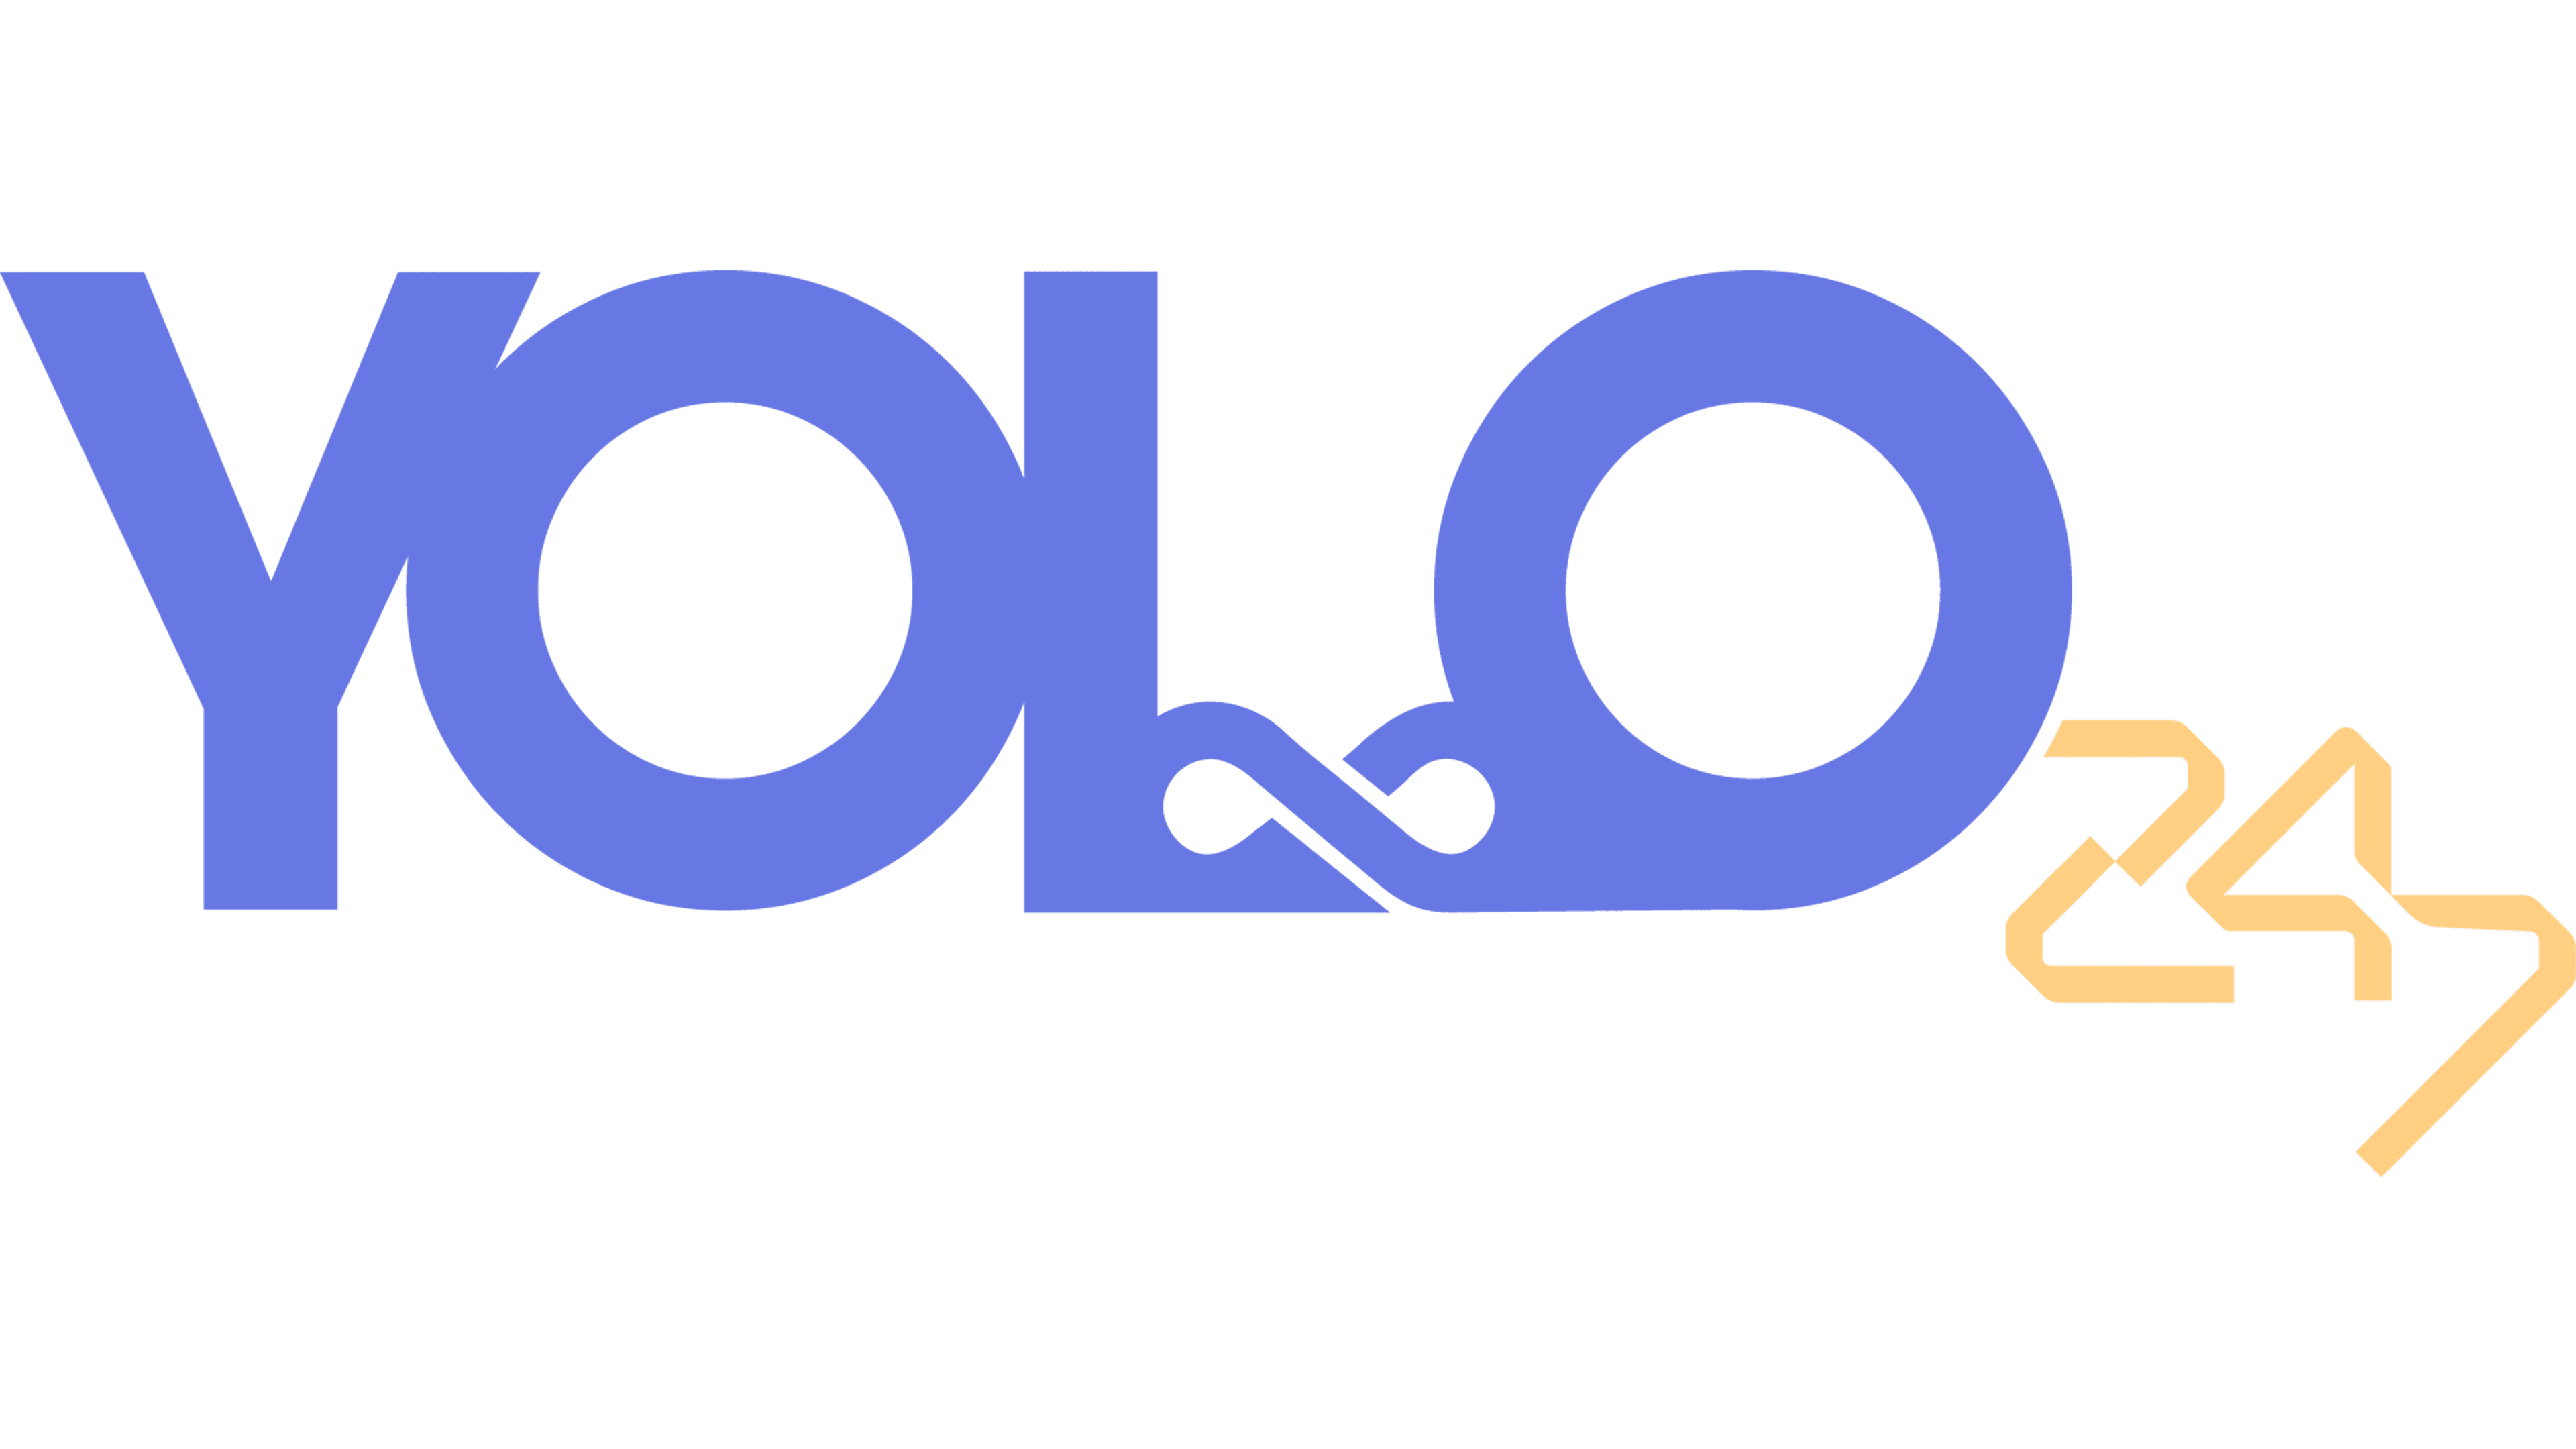 yolo logo